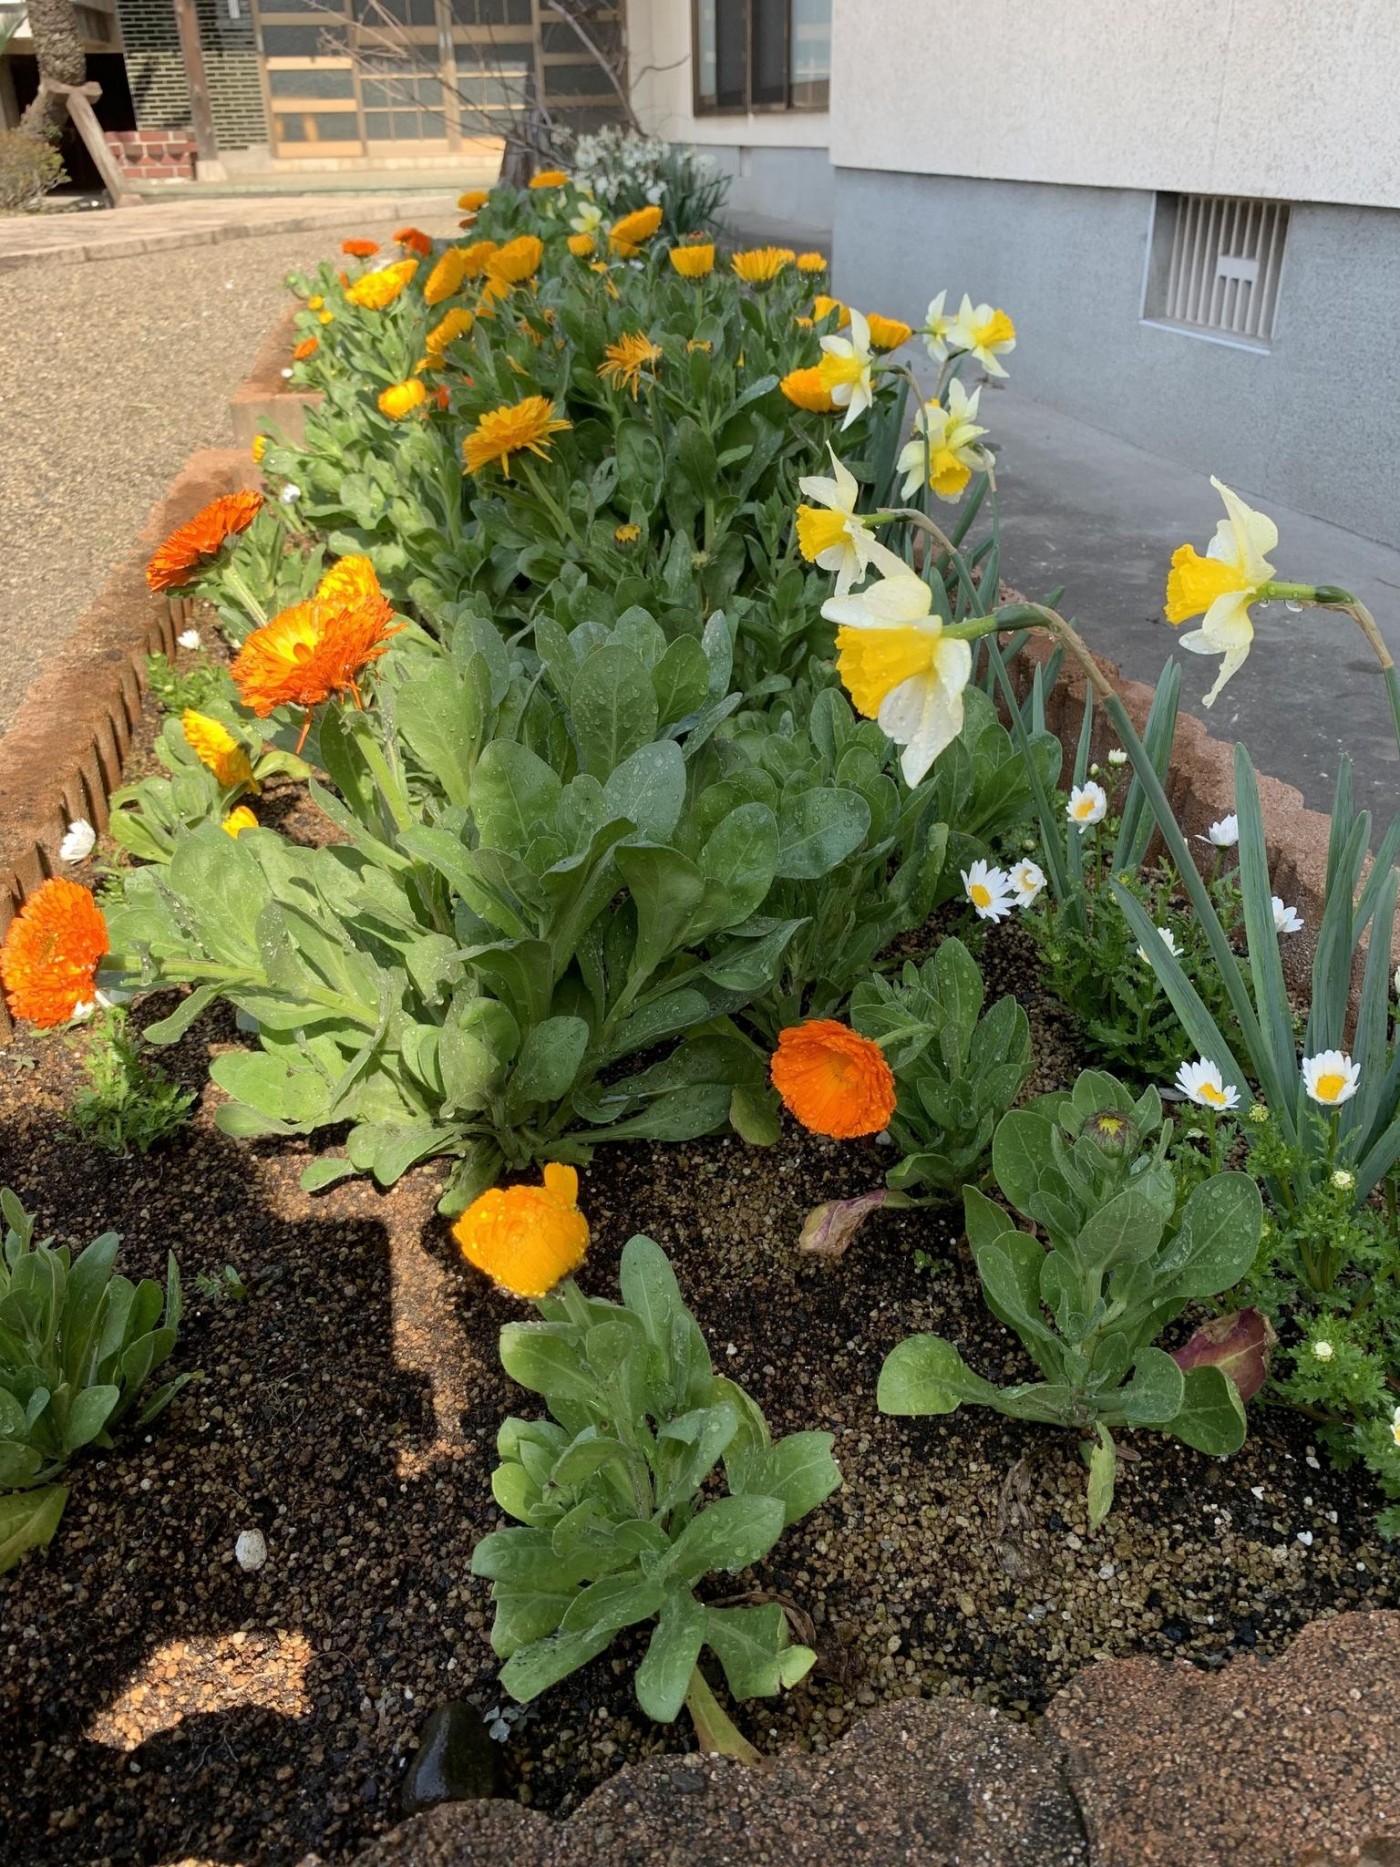 「みんなの花壇」に春のお花が咲きました。坊守さんが「ご門徒有縁の皆さんに気持ちよくお参りしていただきたい」と気をつけて季節のお花を植え替えしています。どうぞ見に来てください！